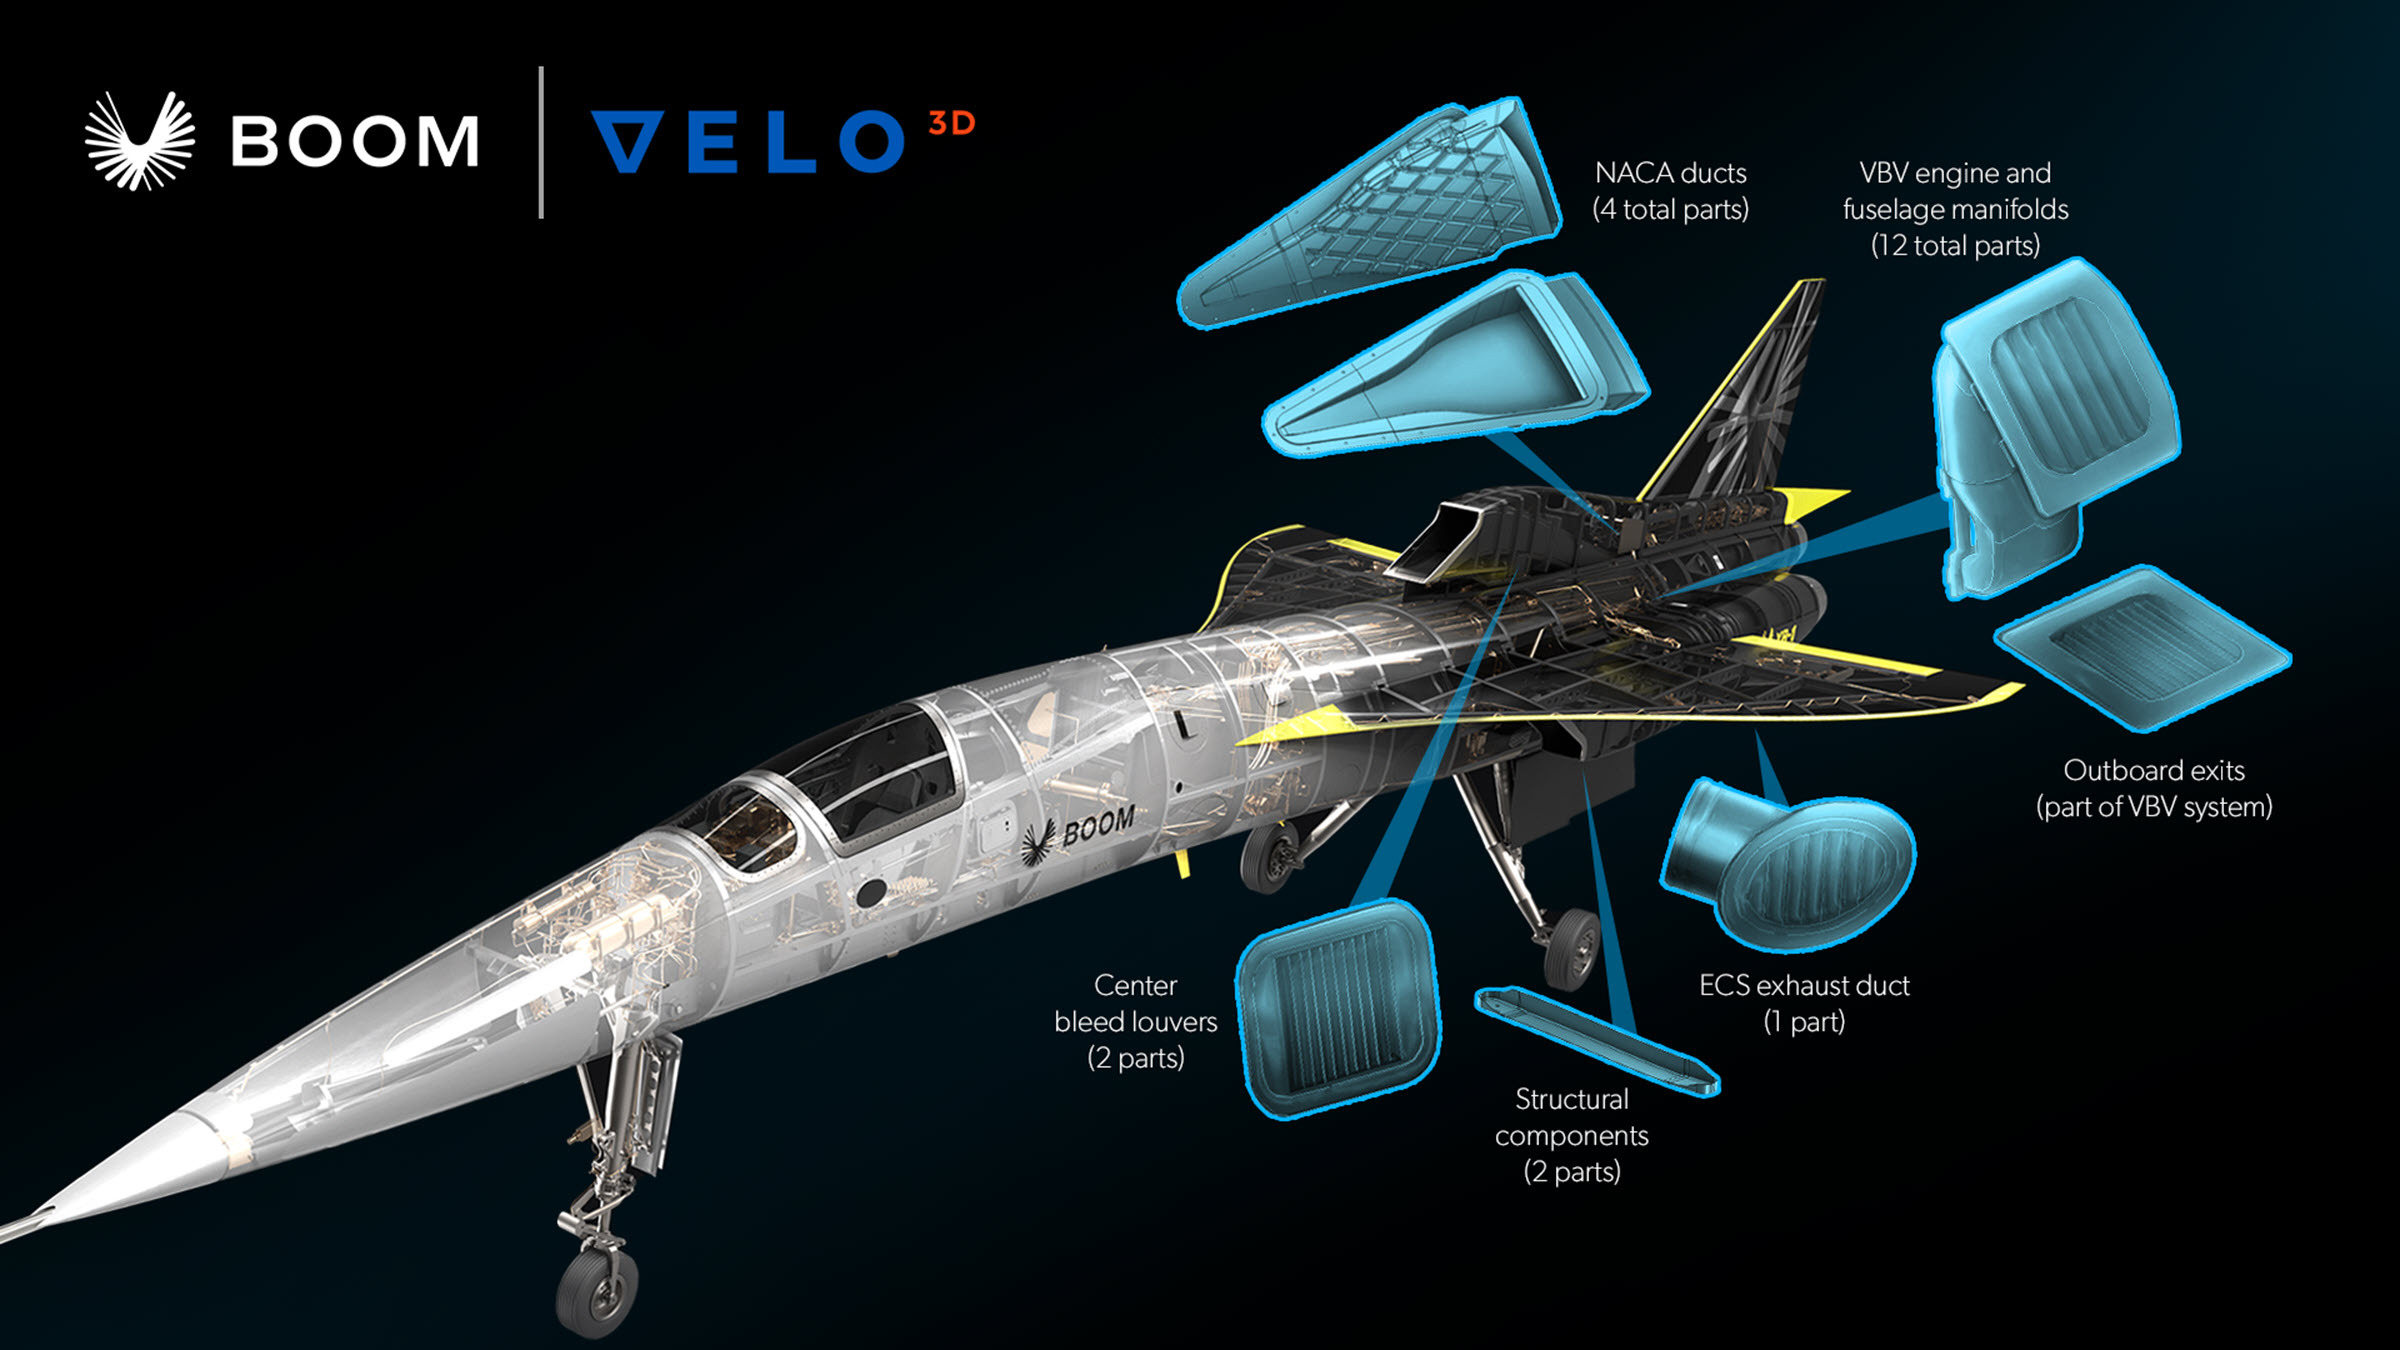 Boom Supersonic da a conocer el avión XB-1 con componentes de equipo de  vuelo impresos en 3D por VELO3D | Business Wire